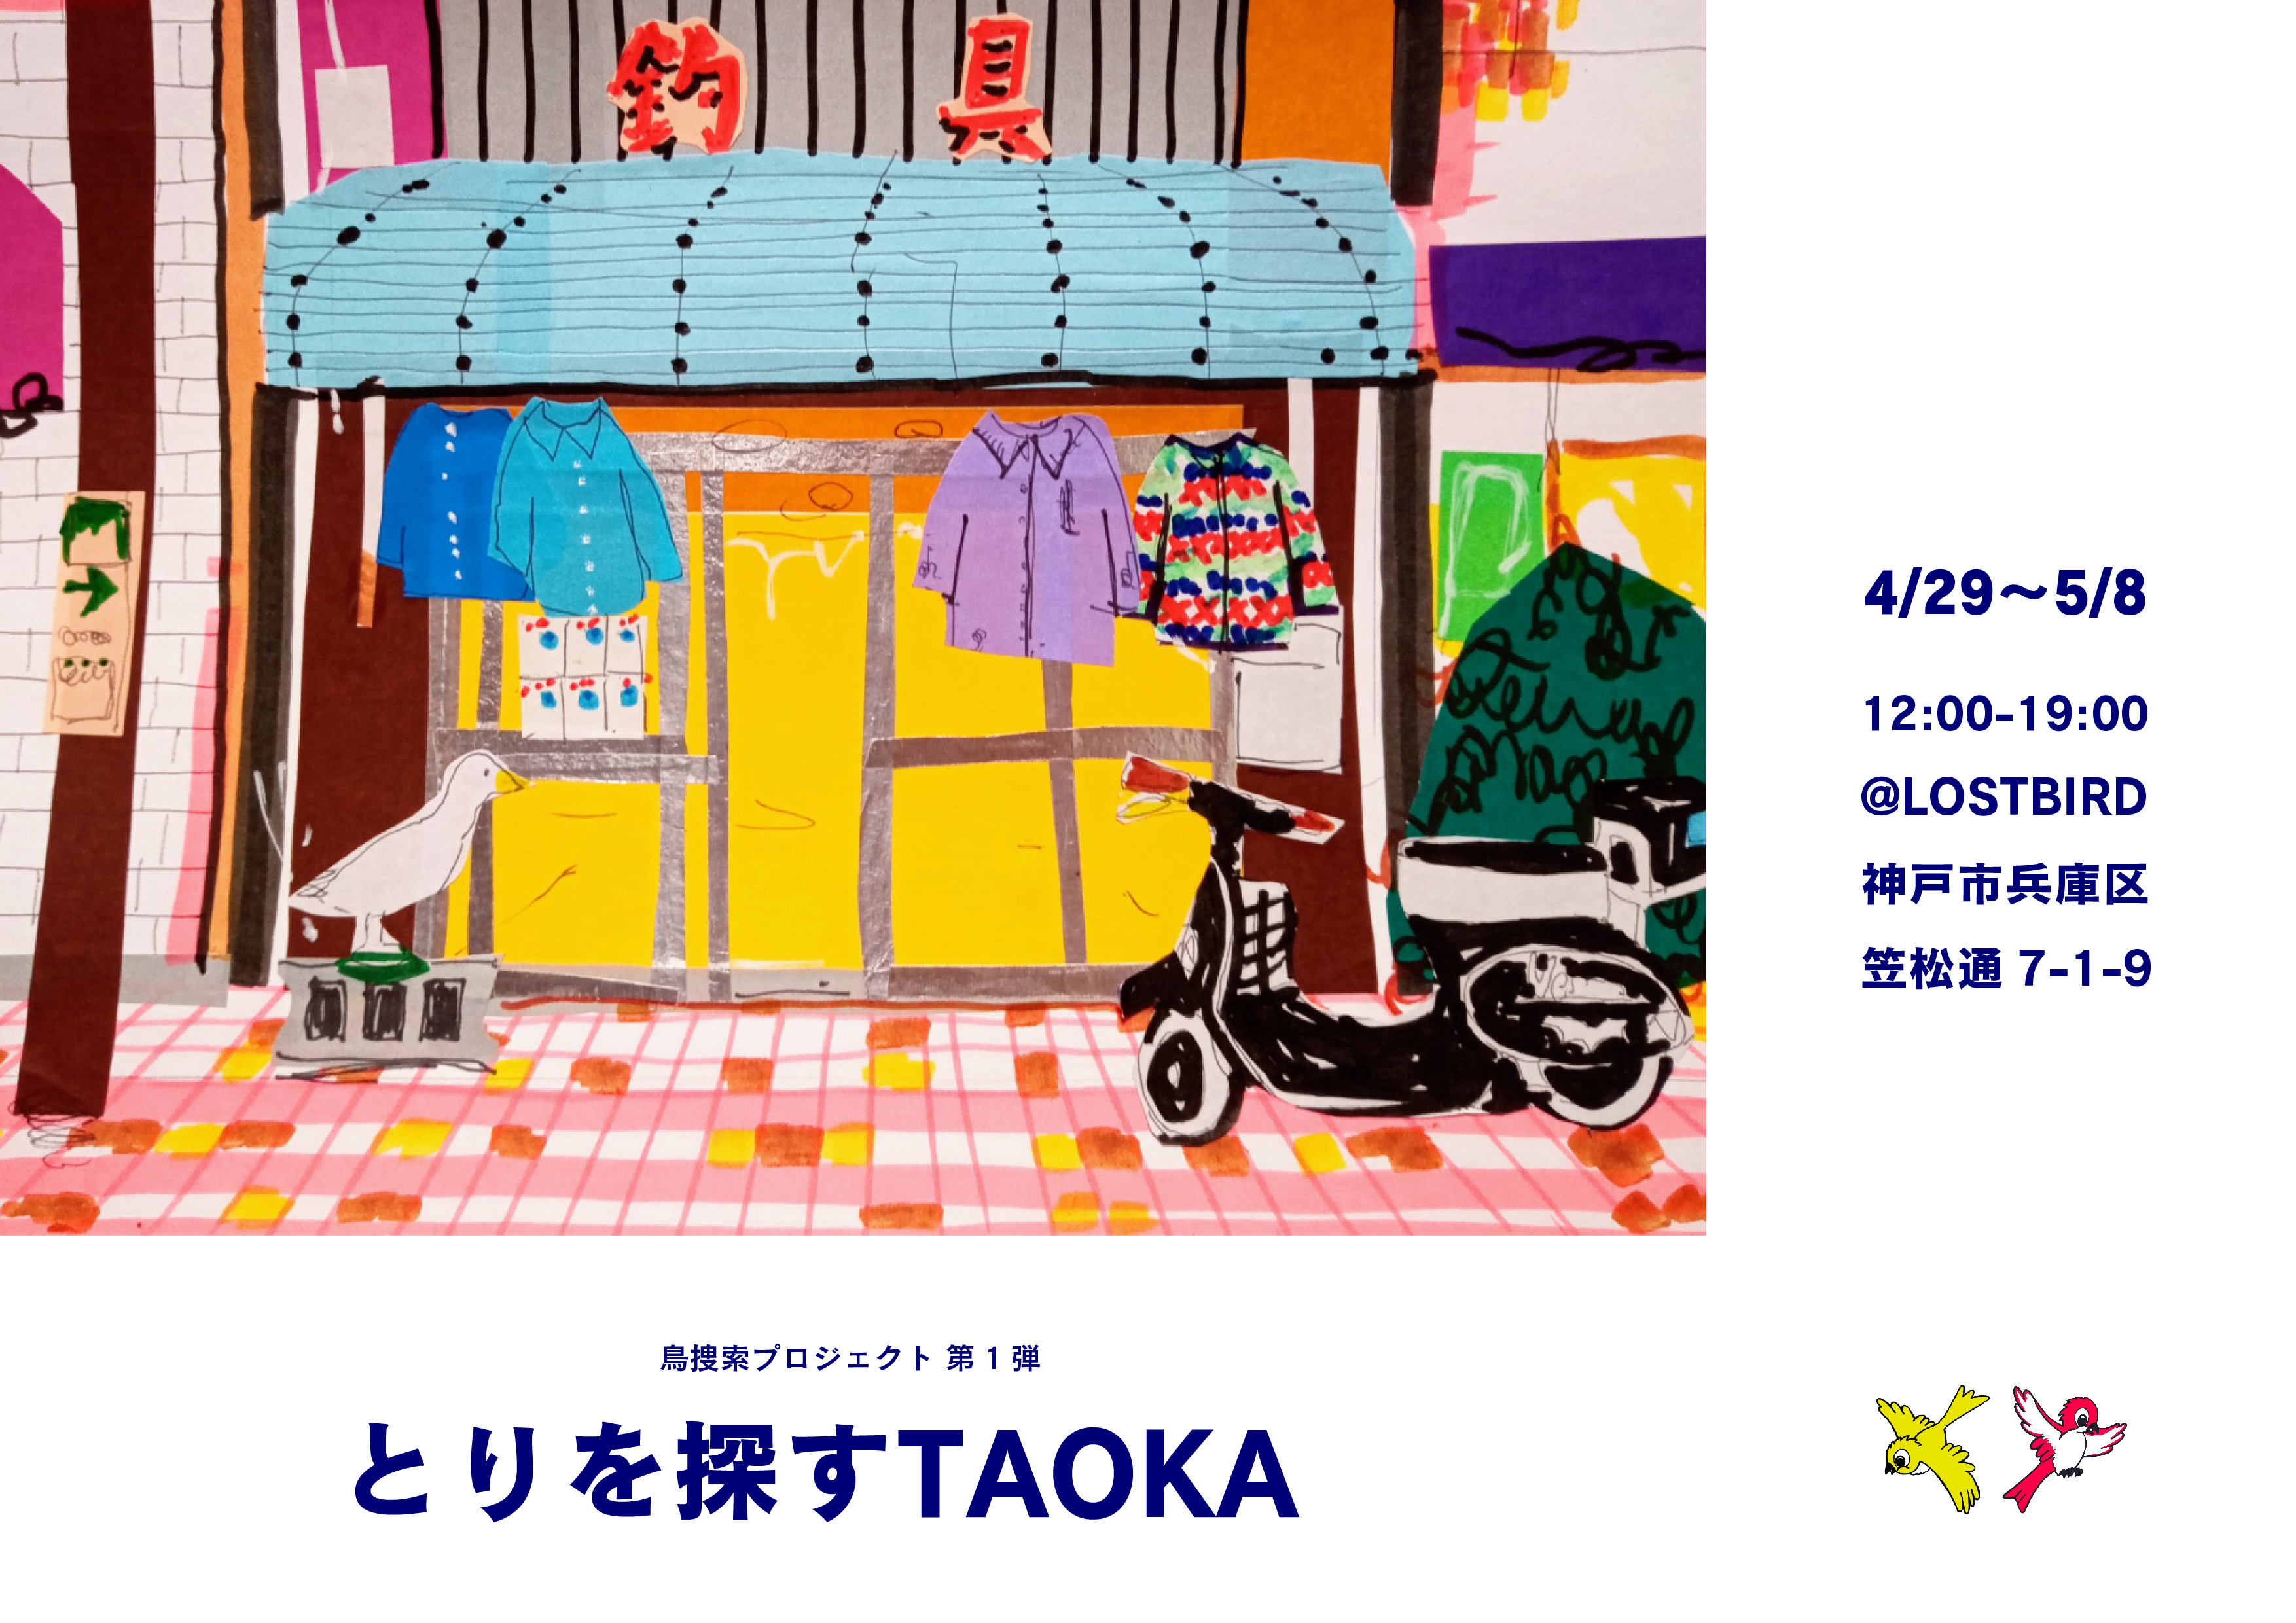 展覧会のお知らせ。　LOST BIRD × 田岡和也「とりを探すTAOKA」